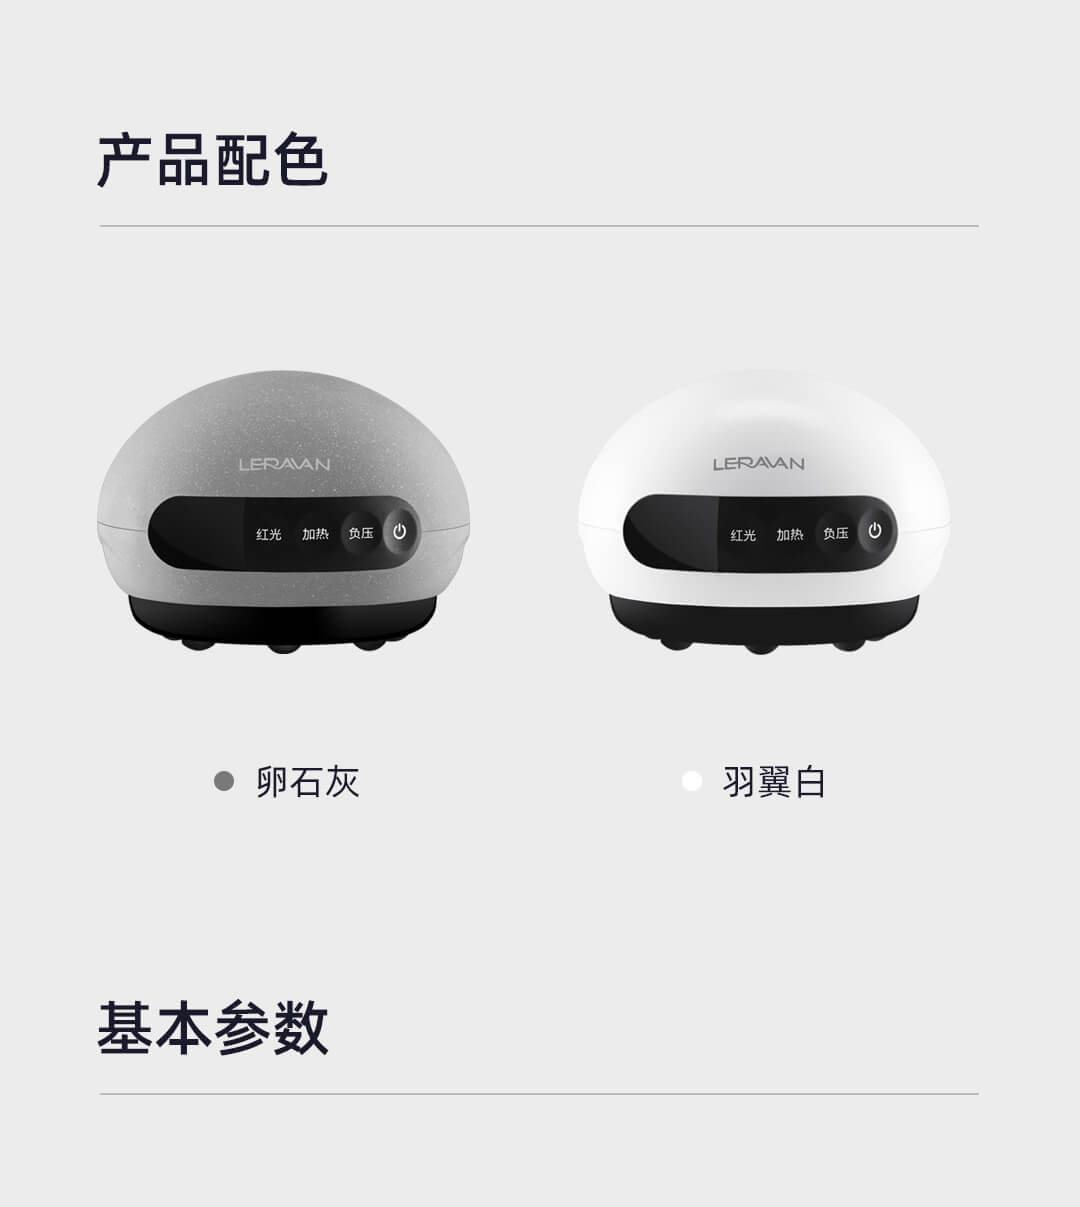 Интеллектуальный массажный аппарат LERAVAG от Xiaomi